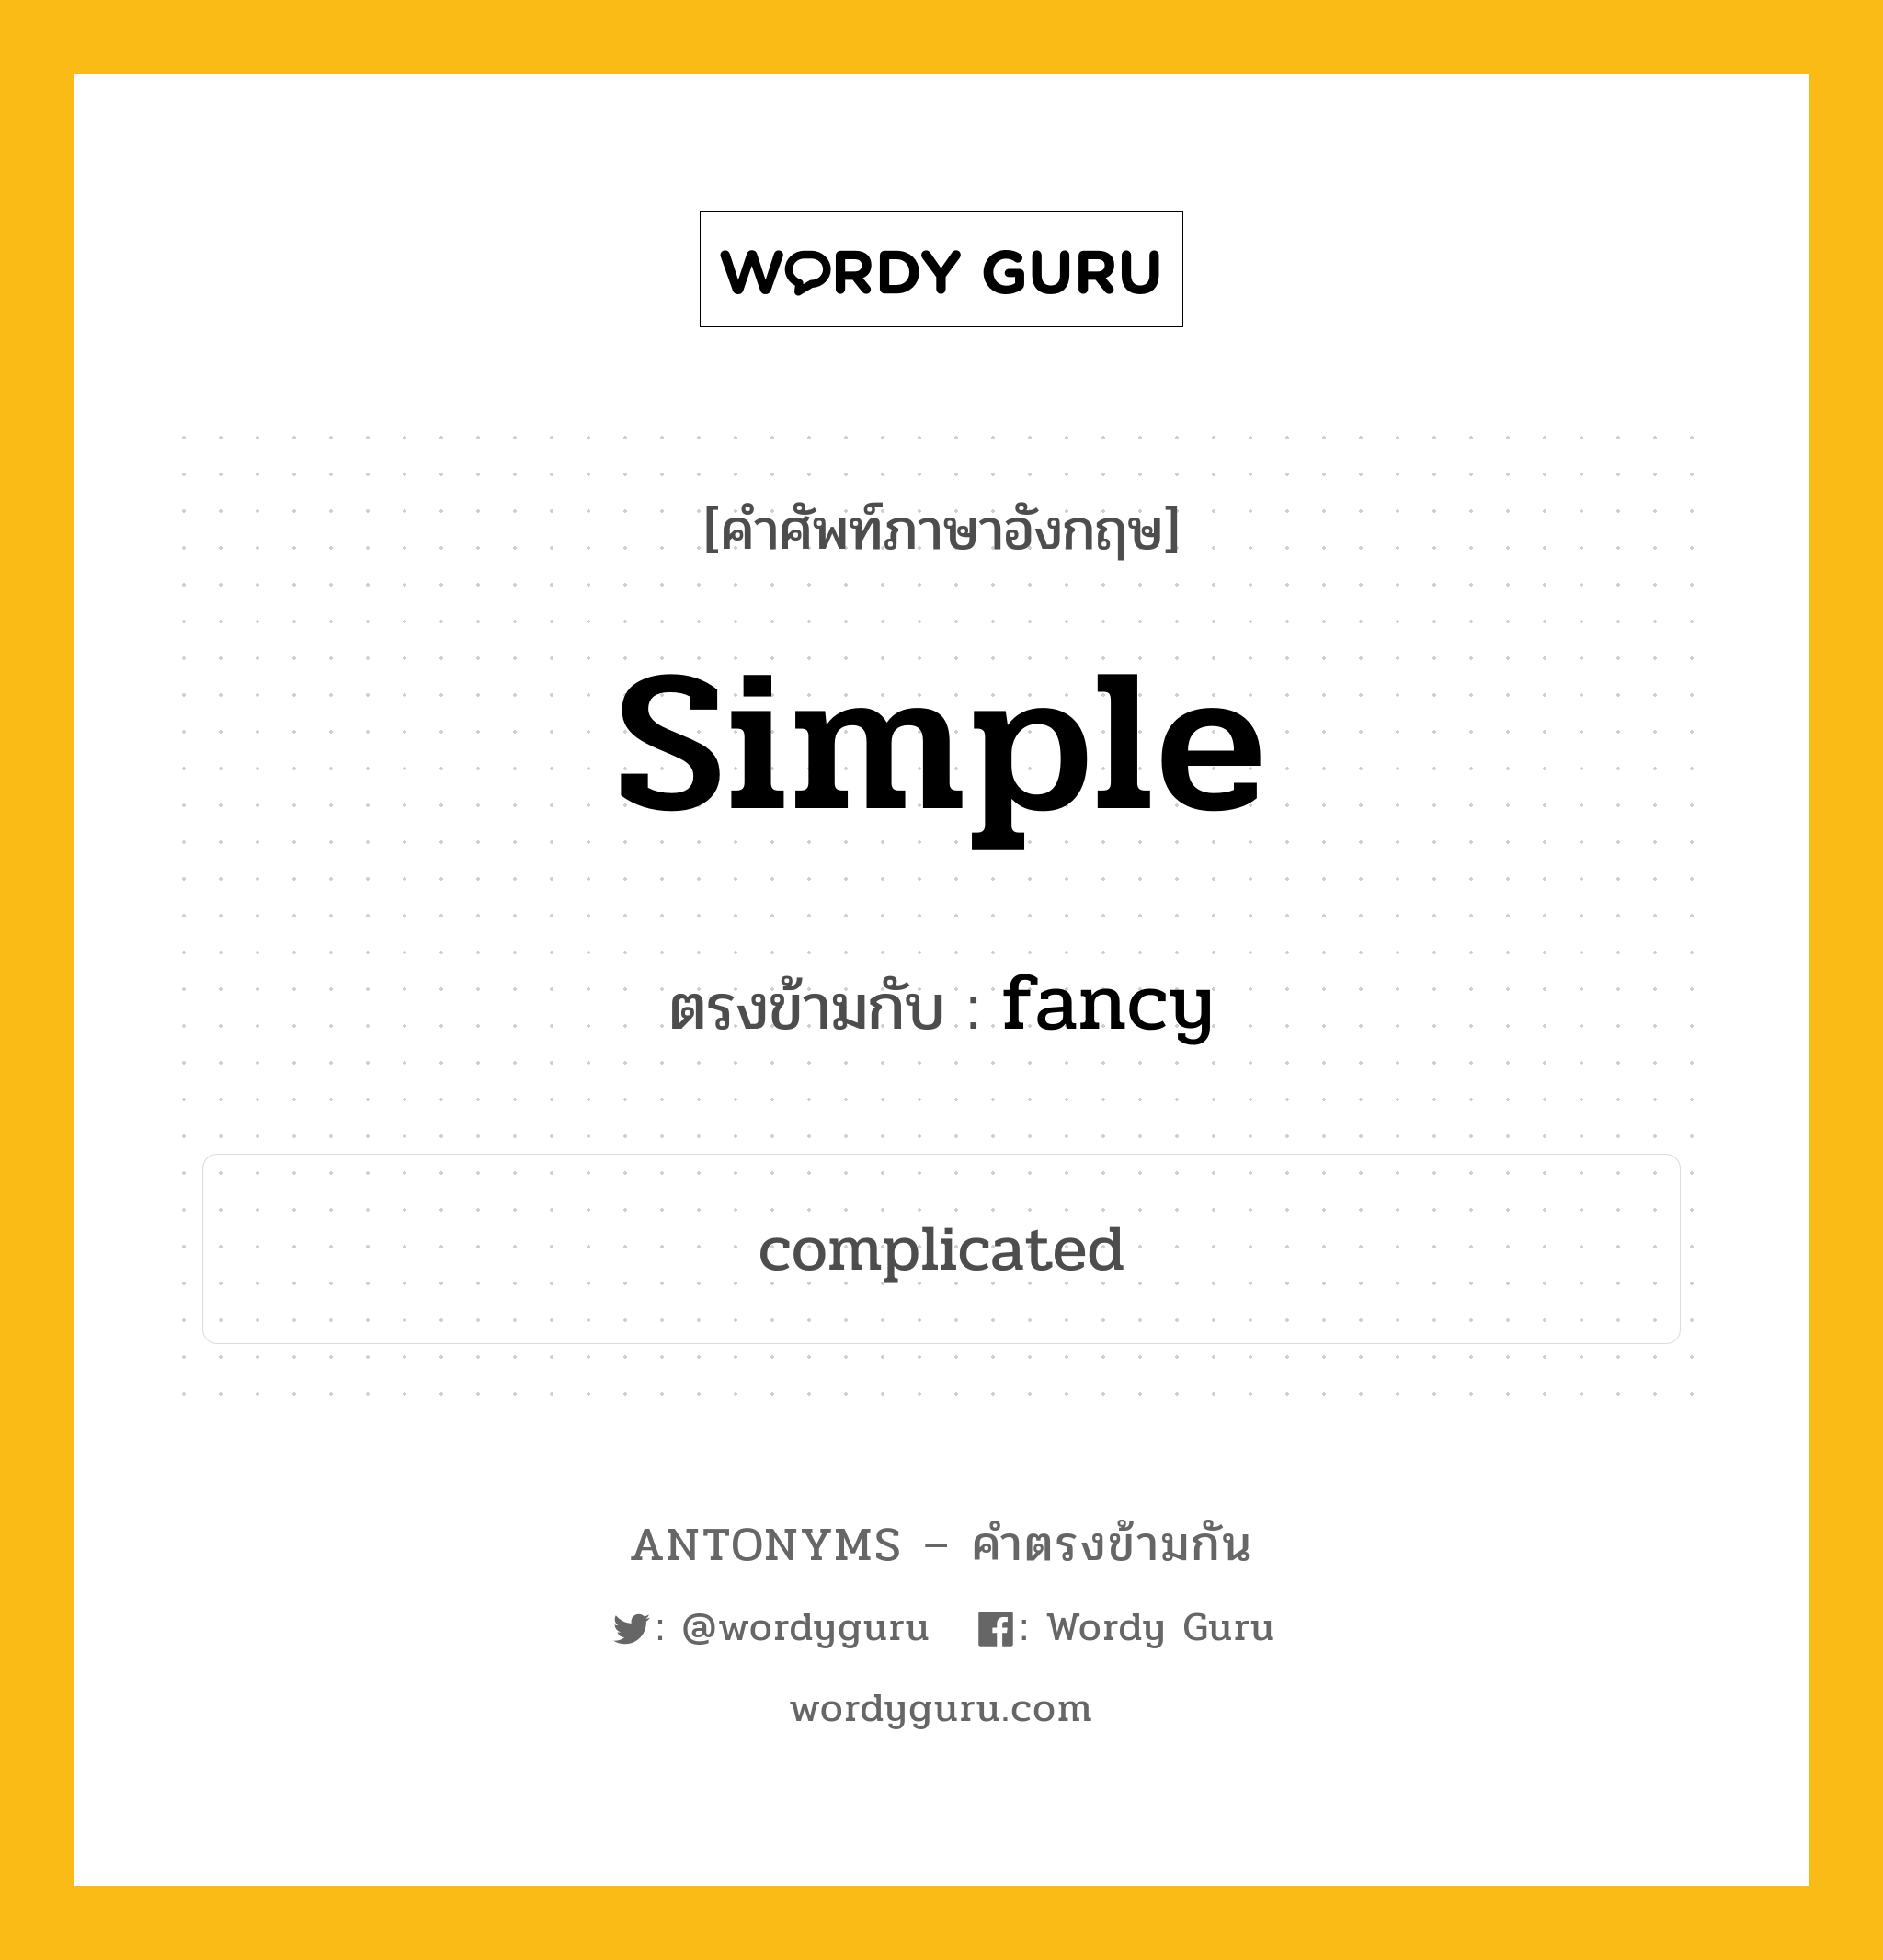 simple เป็นคำตรงข้ามกับคำไหนบ้าง?, คำศัพท์ภาษาอังกฤษ simple ตรงข้ามกับ fancy หมวด fancy